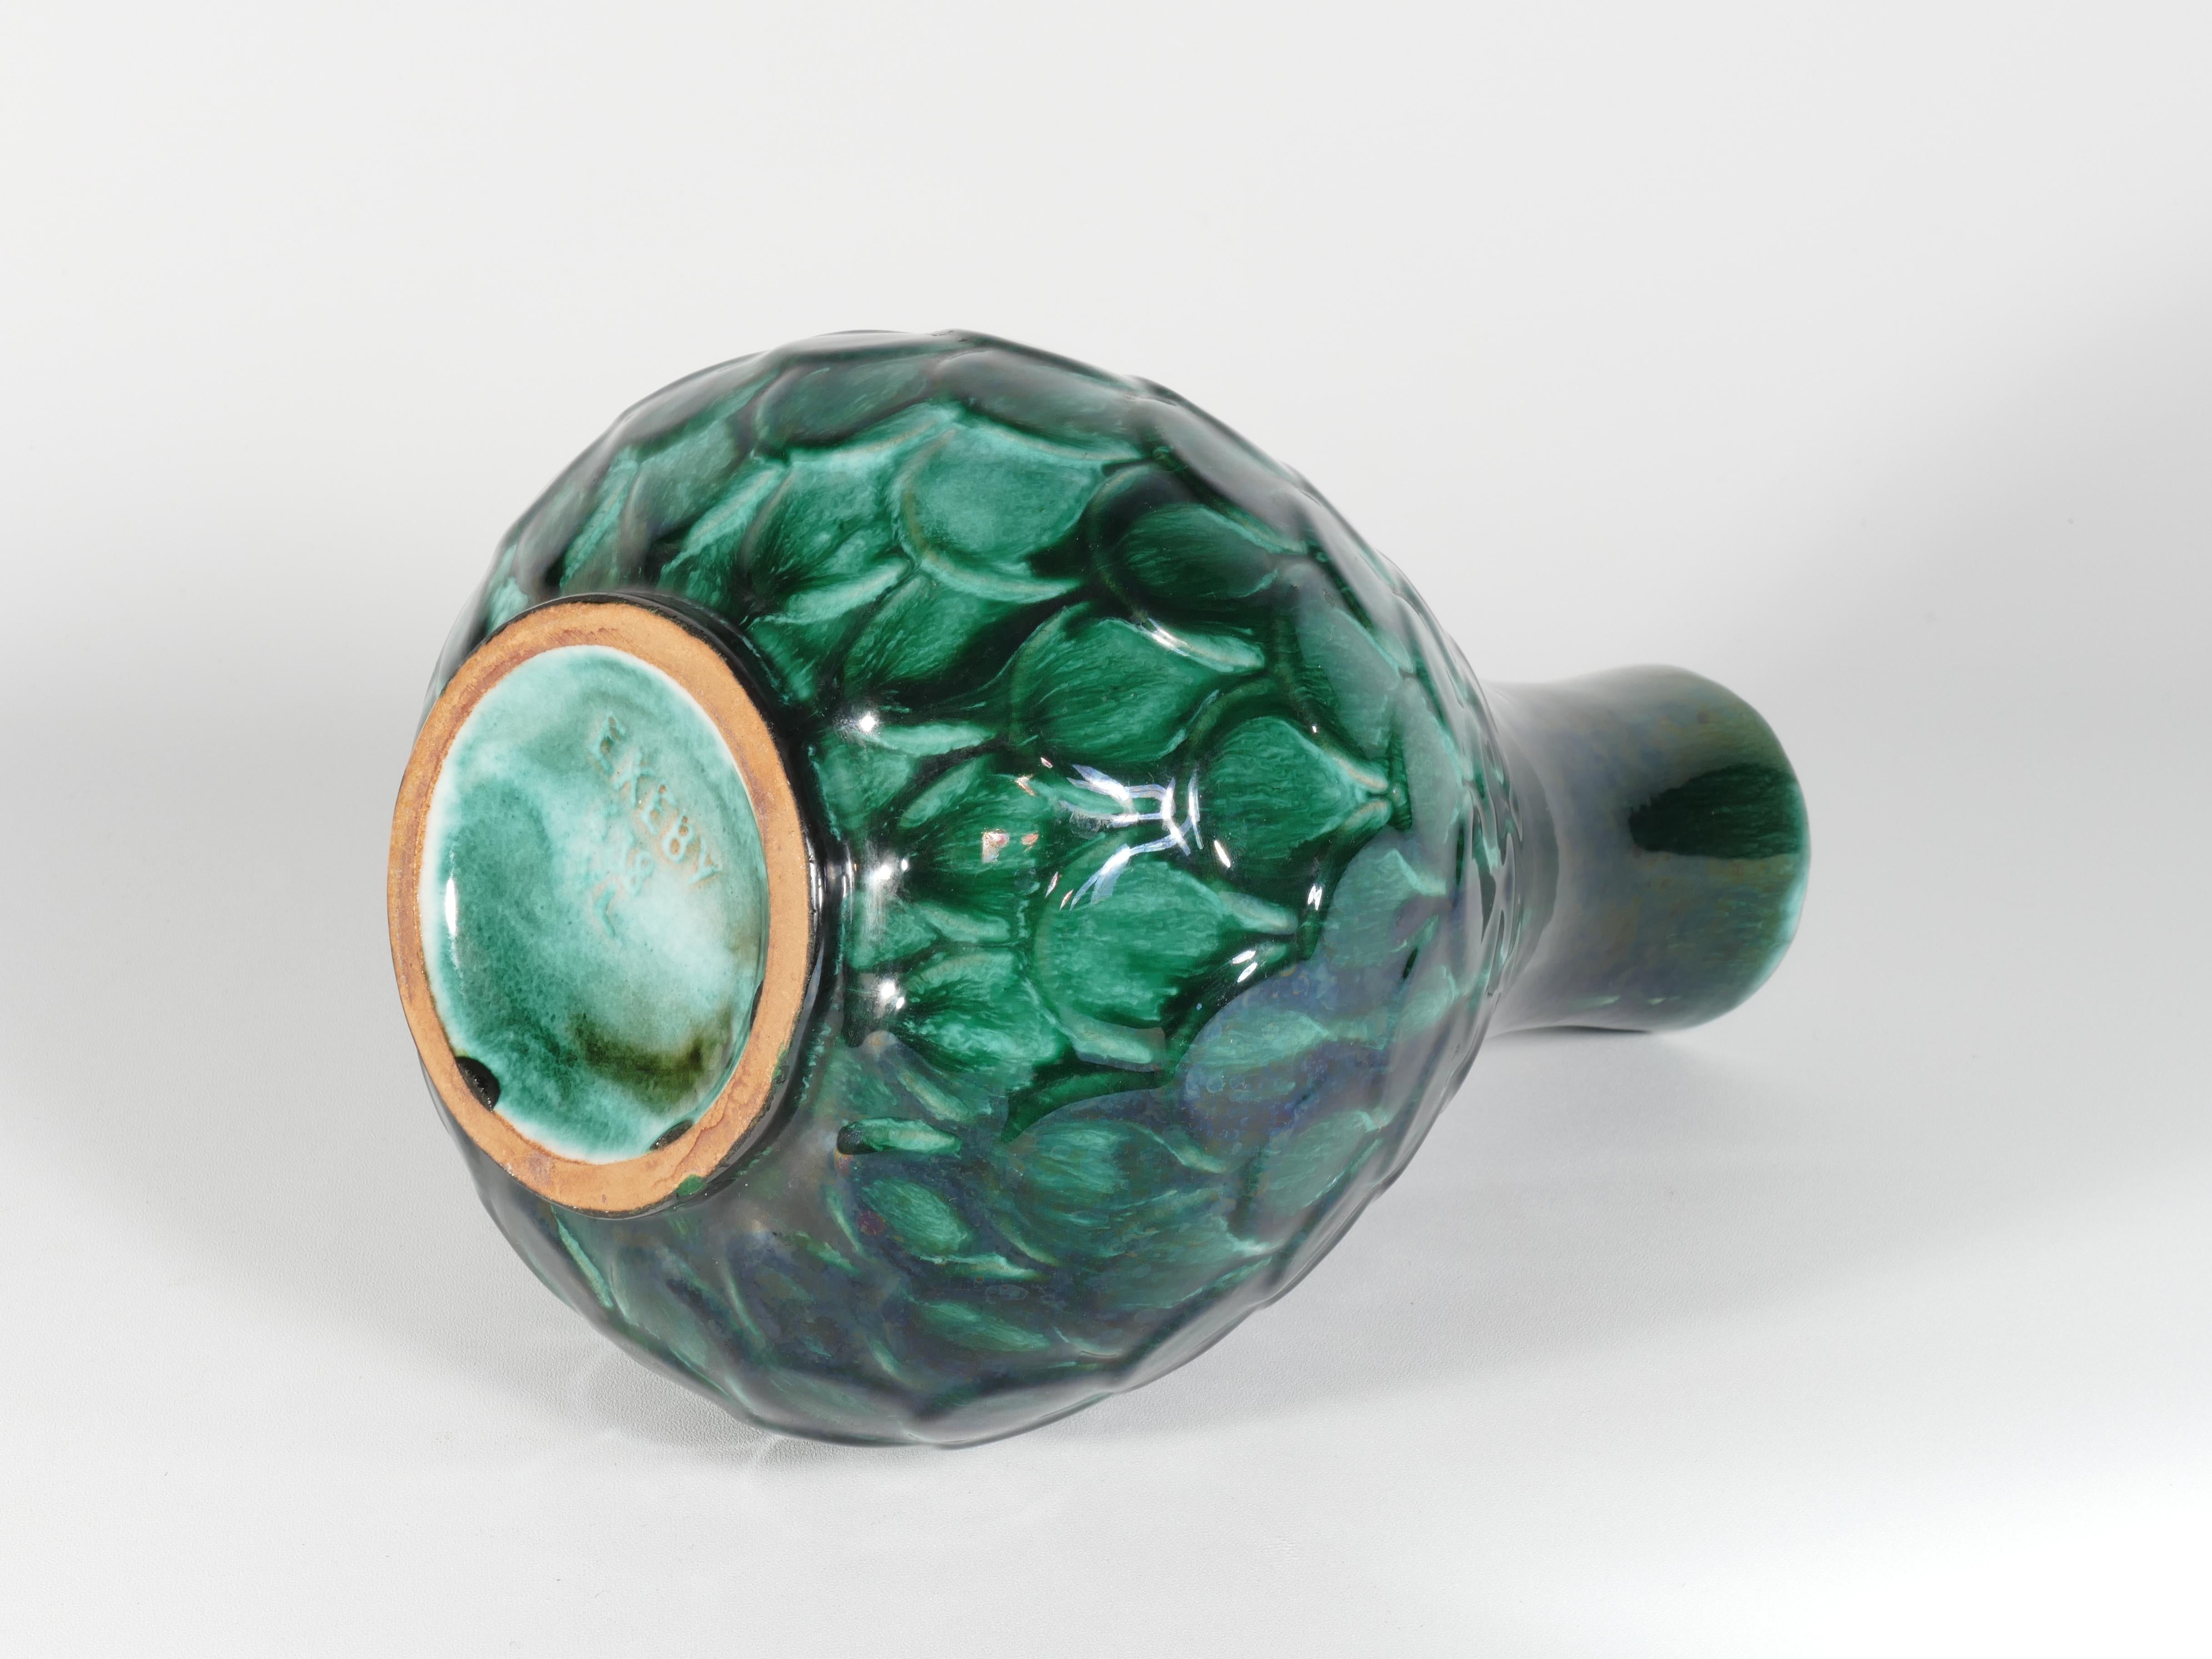 Green Vicke Lindstrand Ceramic Vase 